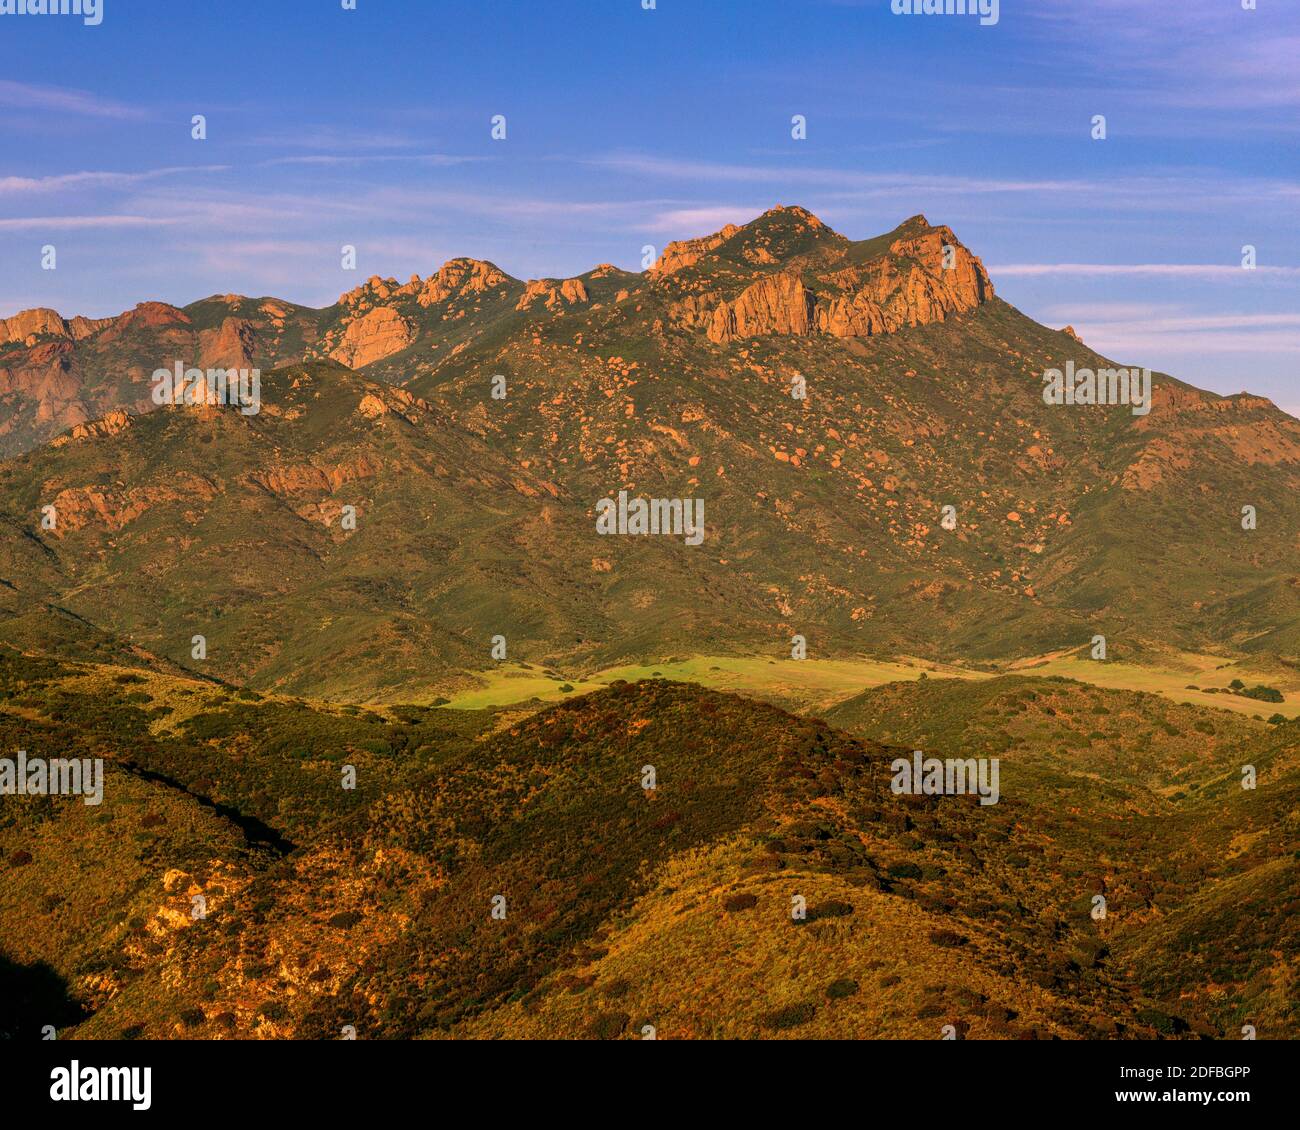 Sandstone Peak, zone de loisirs nationale de Santa Monica, Malibu, Californie Banque D'Images